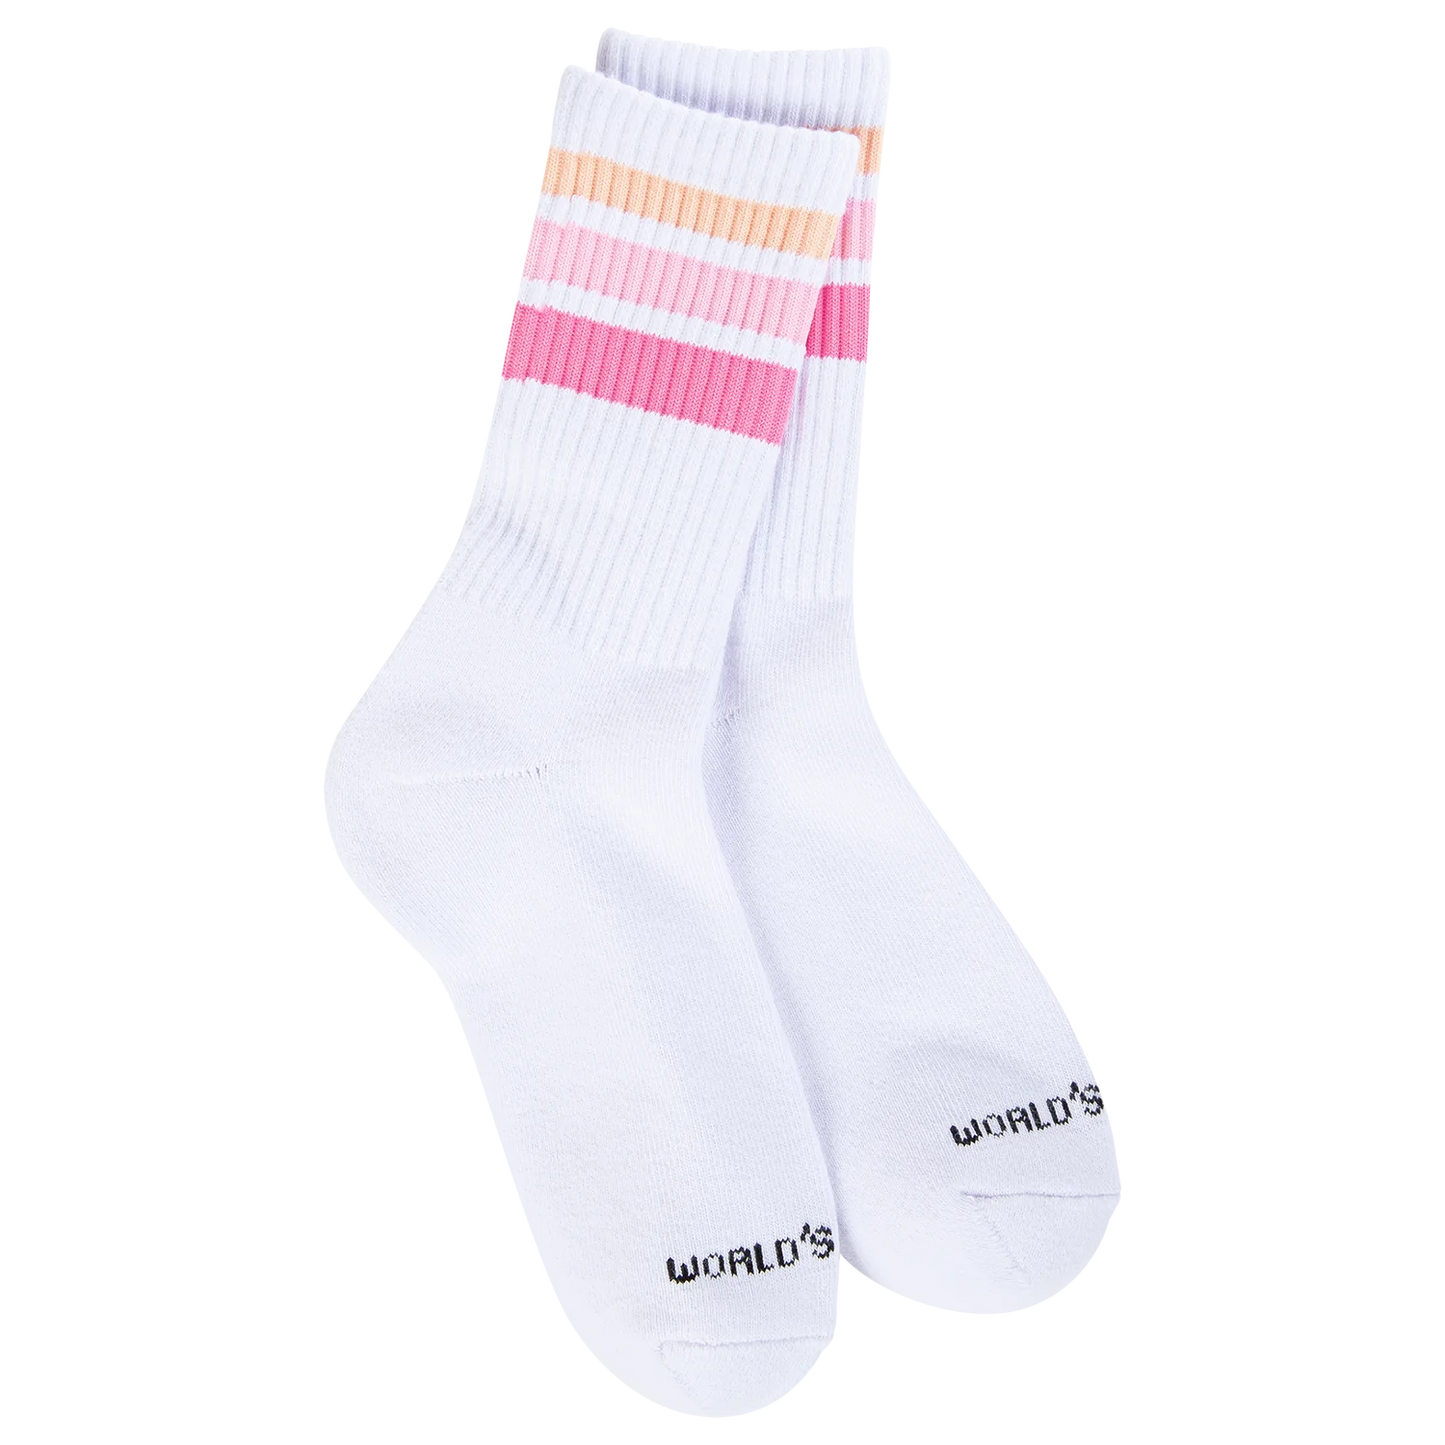 Multi Striped Socks